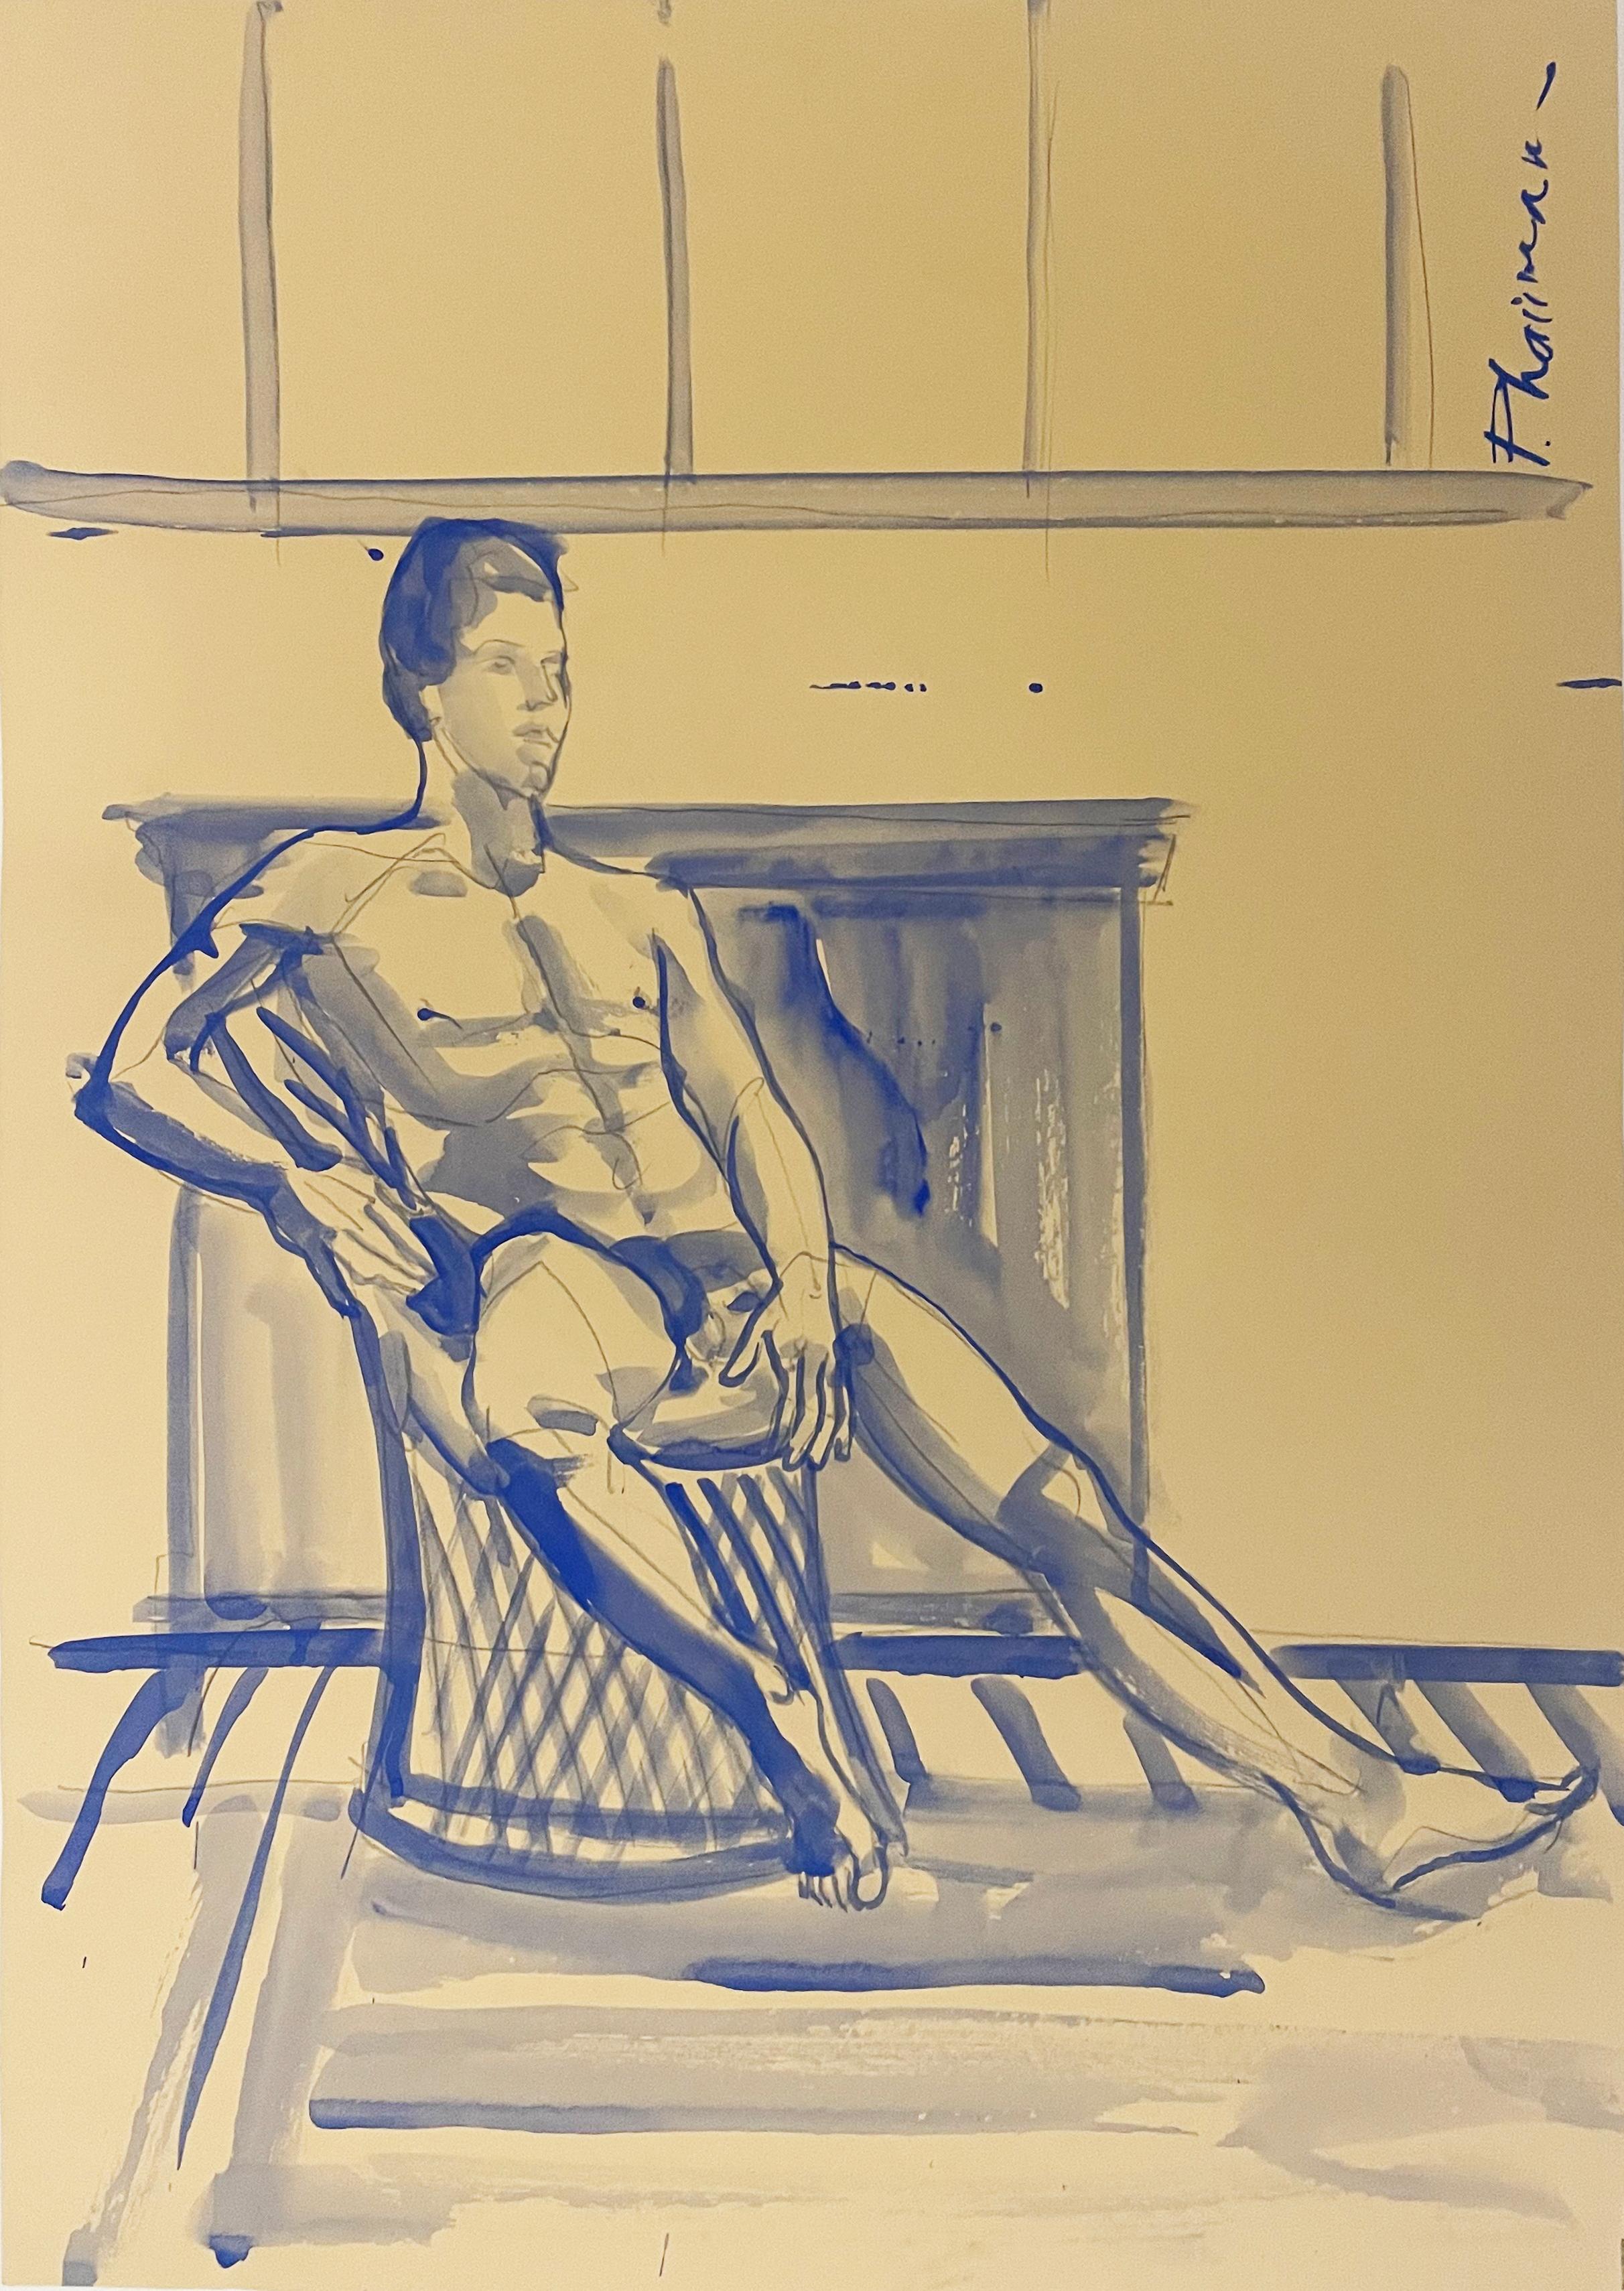 Zimmer mit Aussicht
Männlicher Akt, gemalt mit ultramarinblauer Tempera, inspiriert von Matisse.
70x50cm / 27.5x19.5in
Die Lieferung erfolgt in einer Rolle direkt vom Künstler.
Teil meiner früheren Serie Nackte Männer.

1st dibs bietet kostenlosen